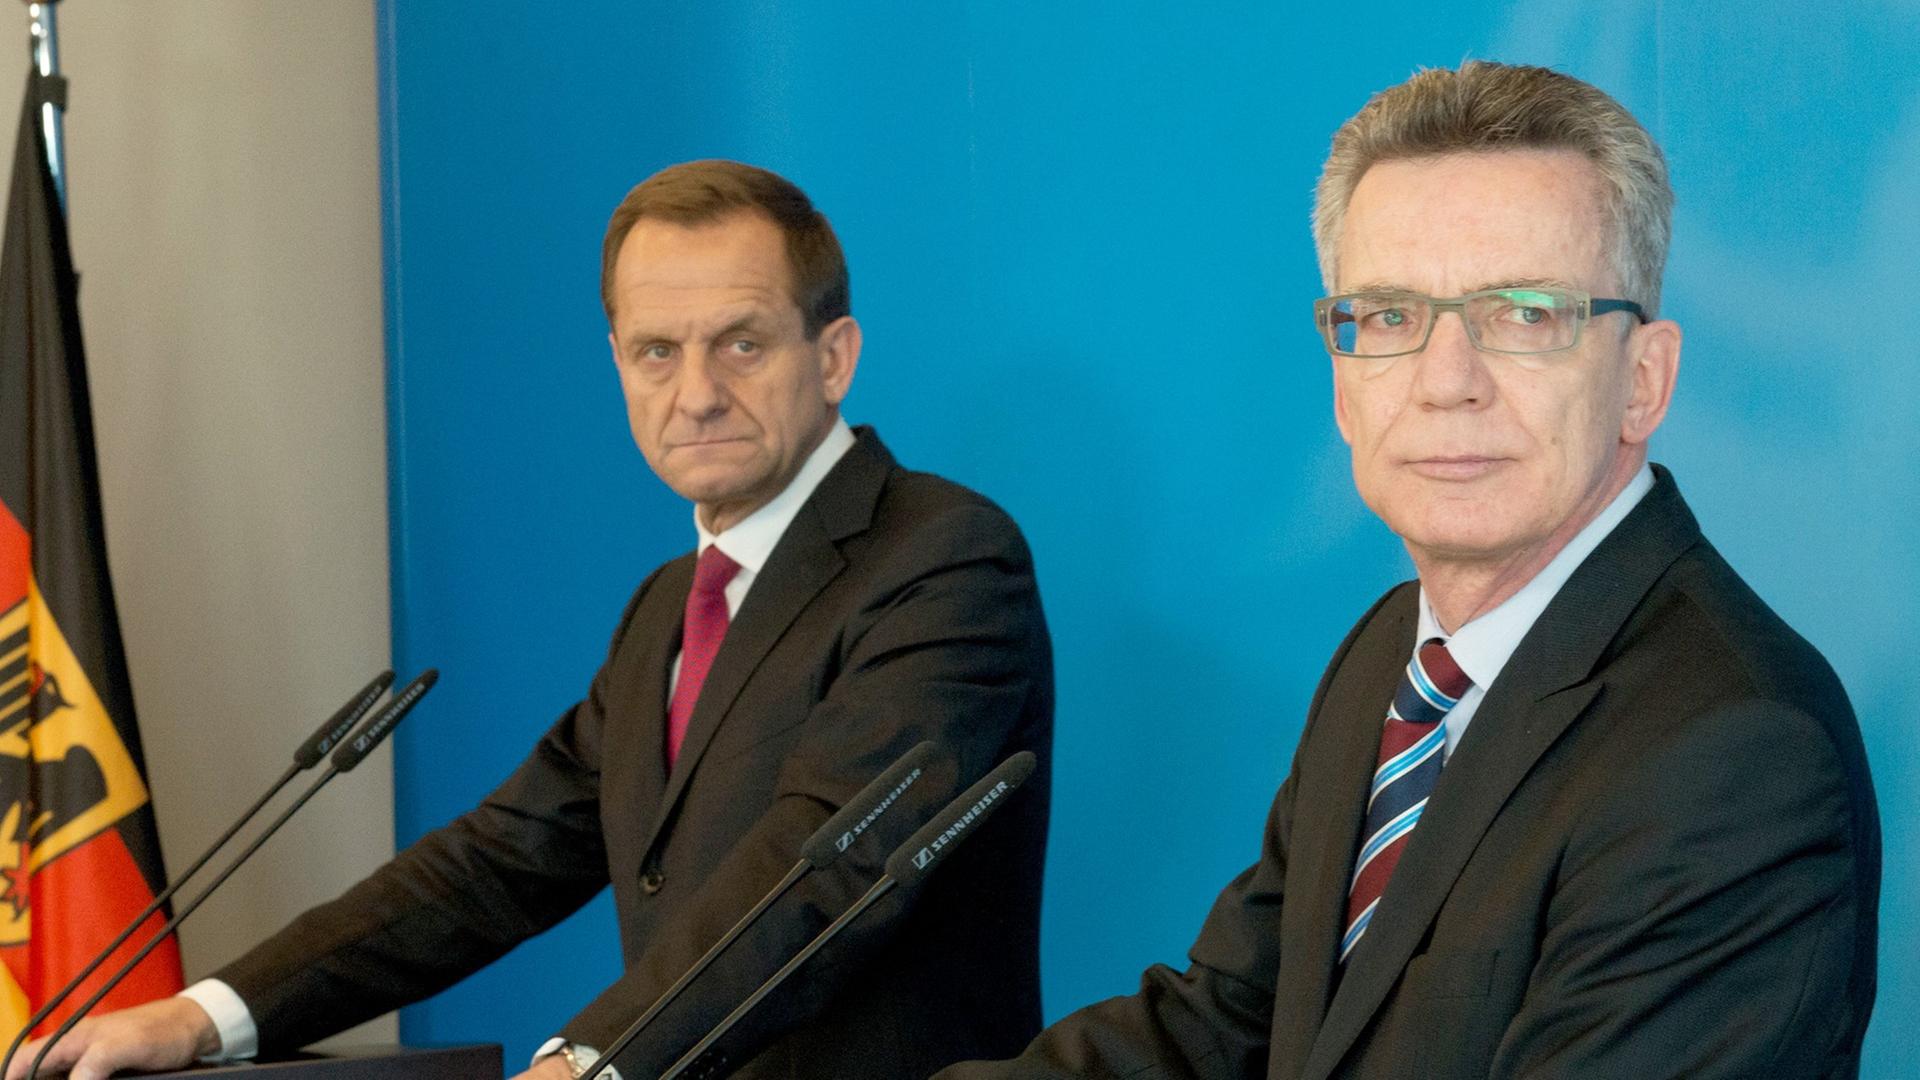 Bundesinnenminister Thomas de Maiziere (CDU, r) und der Präsident des Deutschen Olympischen Sportbundes (DOSB), Alfons Hörmann, geben 11.03.2015 in Berlin eine Pressekonferenz.